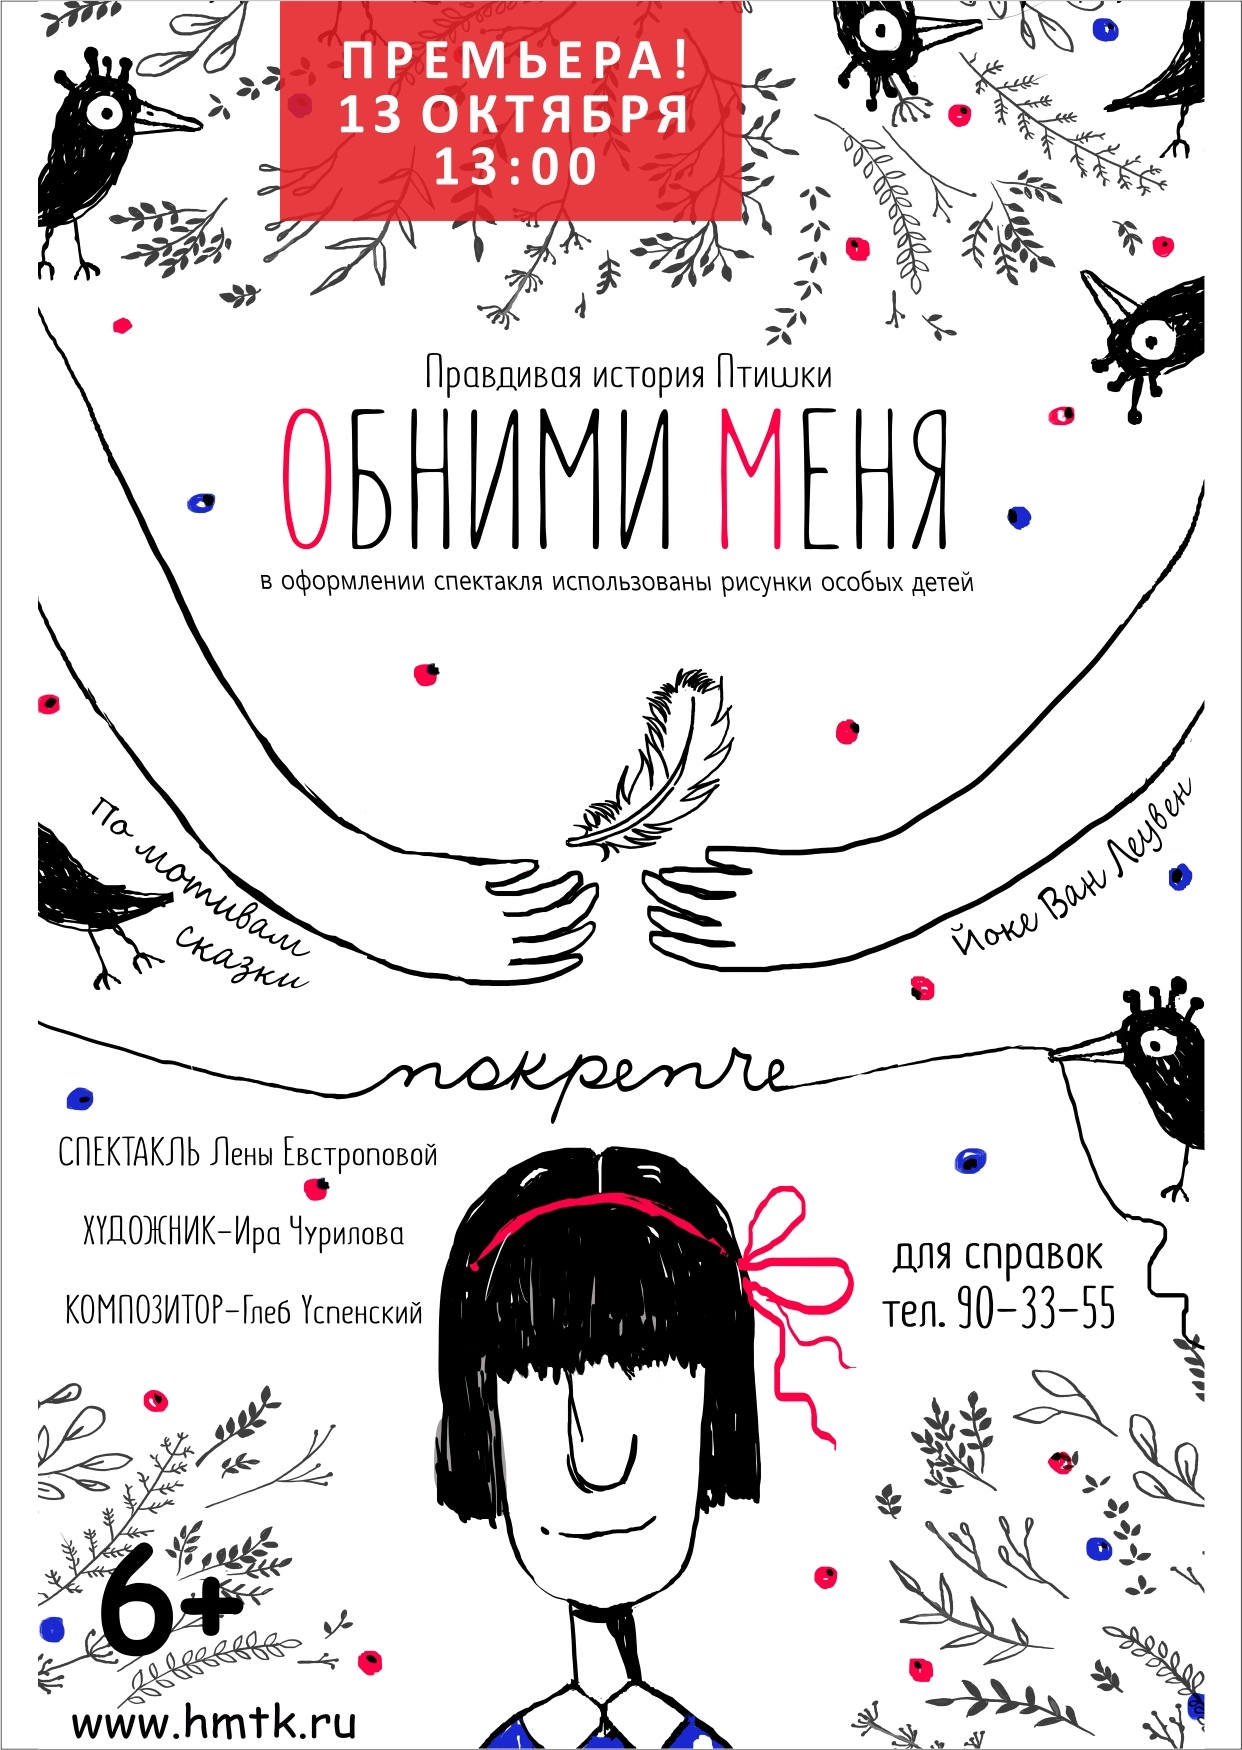 Театр кукол Ханты-Мансийска расскажет о девочке с крыльями вместо рук